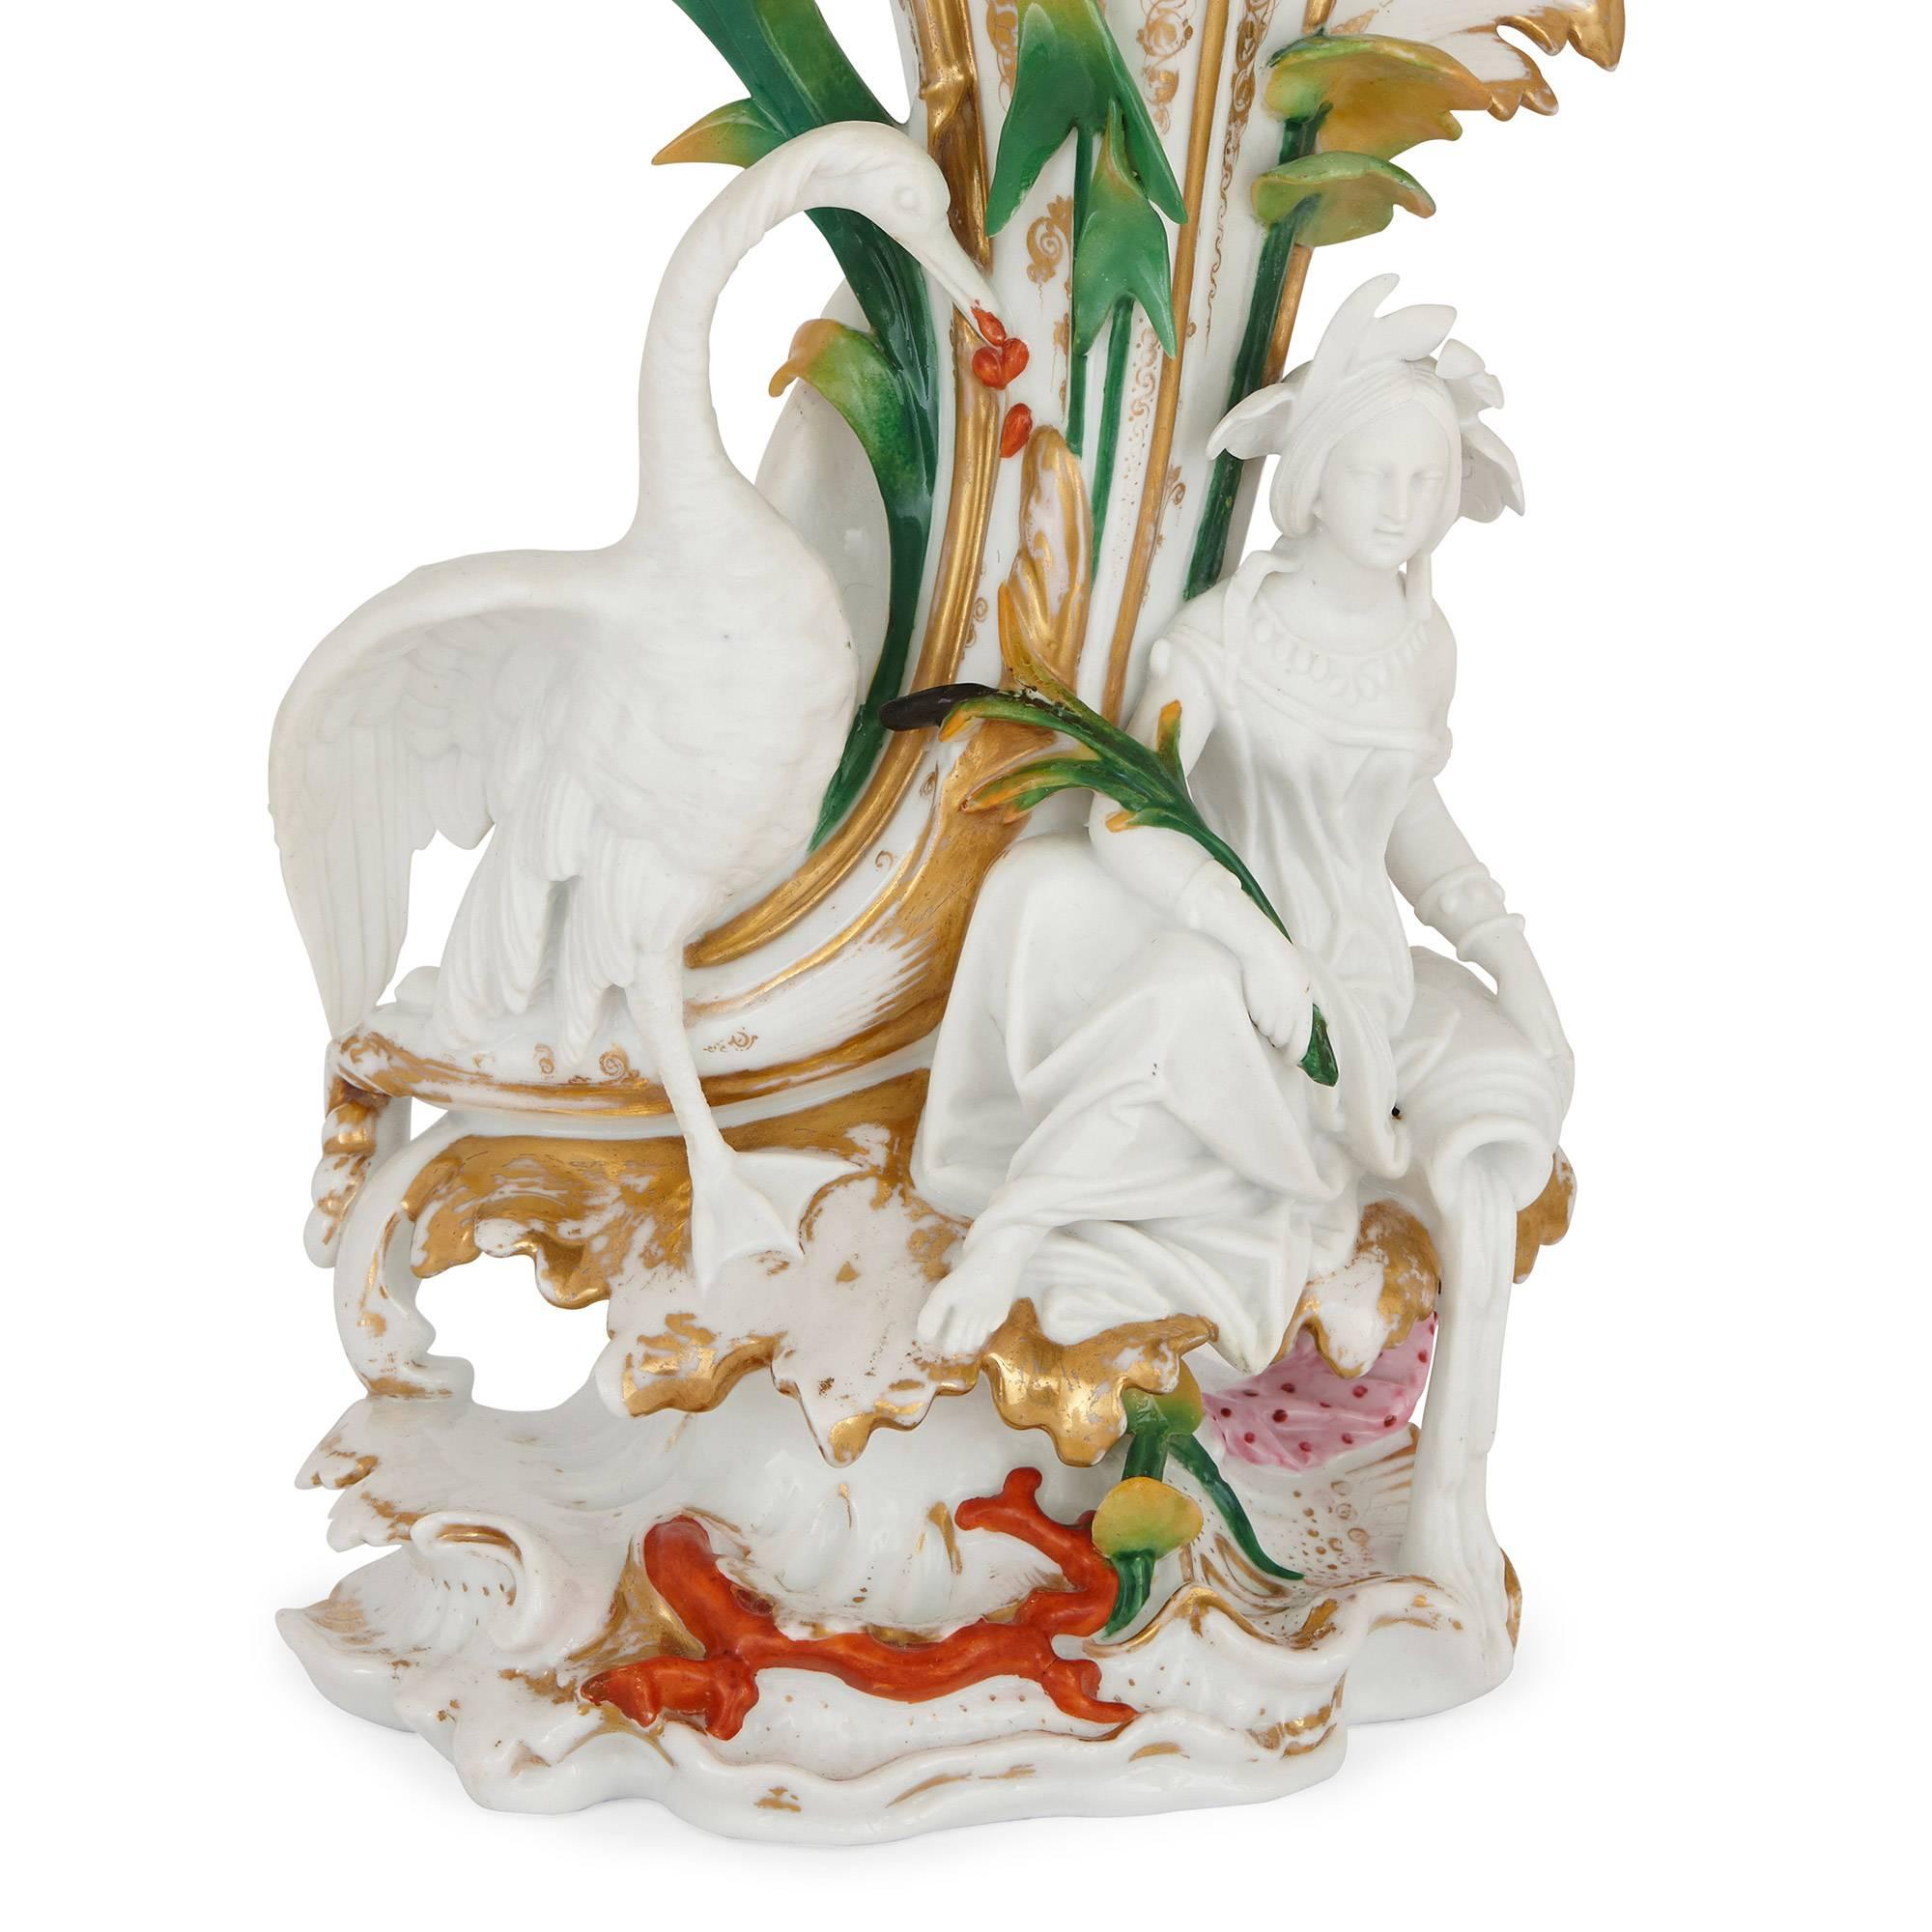 Jeweils trompetenförmig mit aufgelegten allegorischen Figuren von Napoleon III.

Diese schönen Porzellanvasen zeichnen sich durch ihre leuchtende, frische Farbpalette und ihre trompetenförmigen Hälse aus, die Bilder von floraler Fülle hervorrufen.